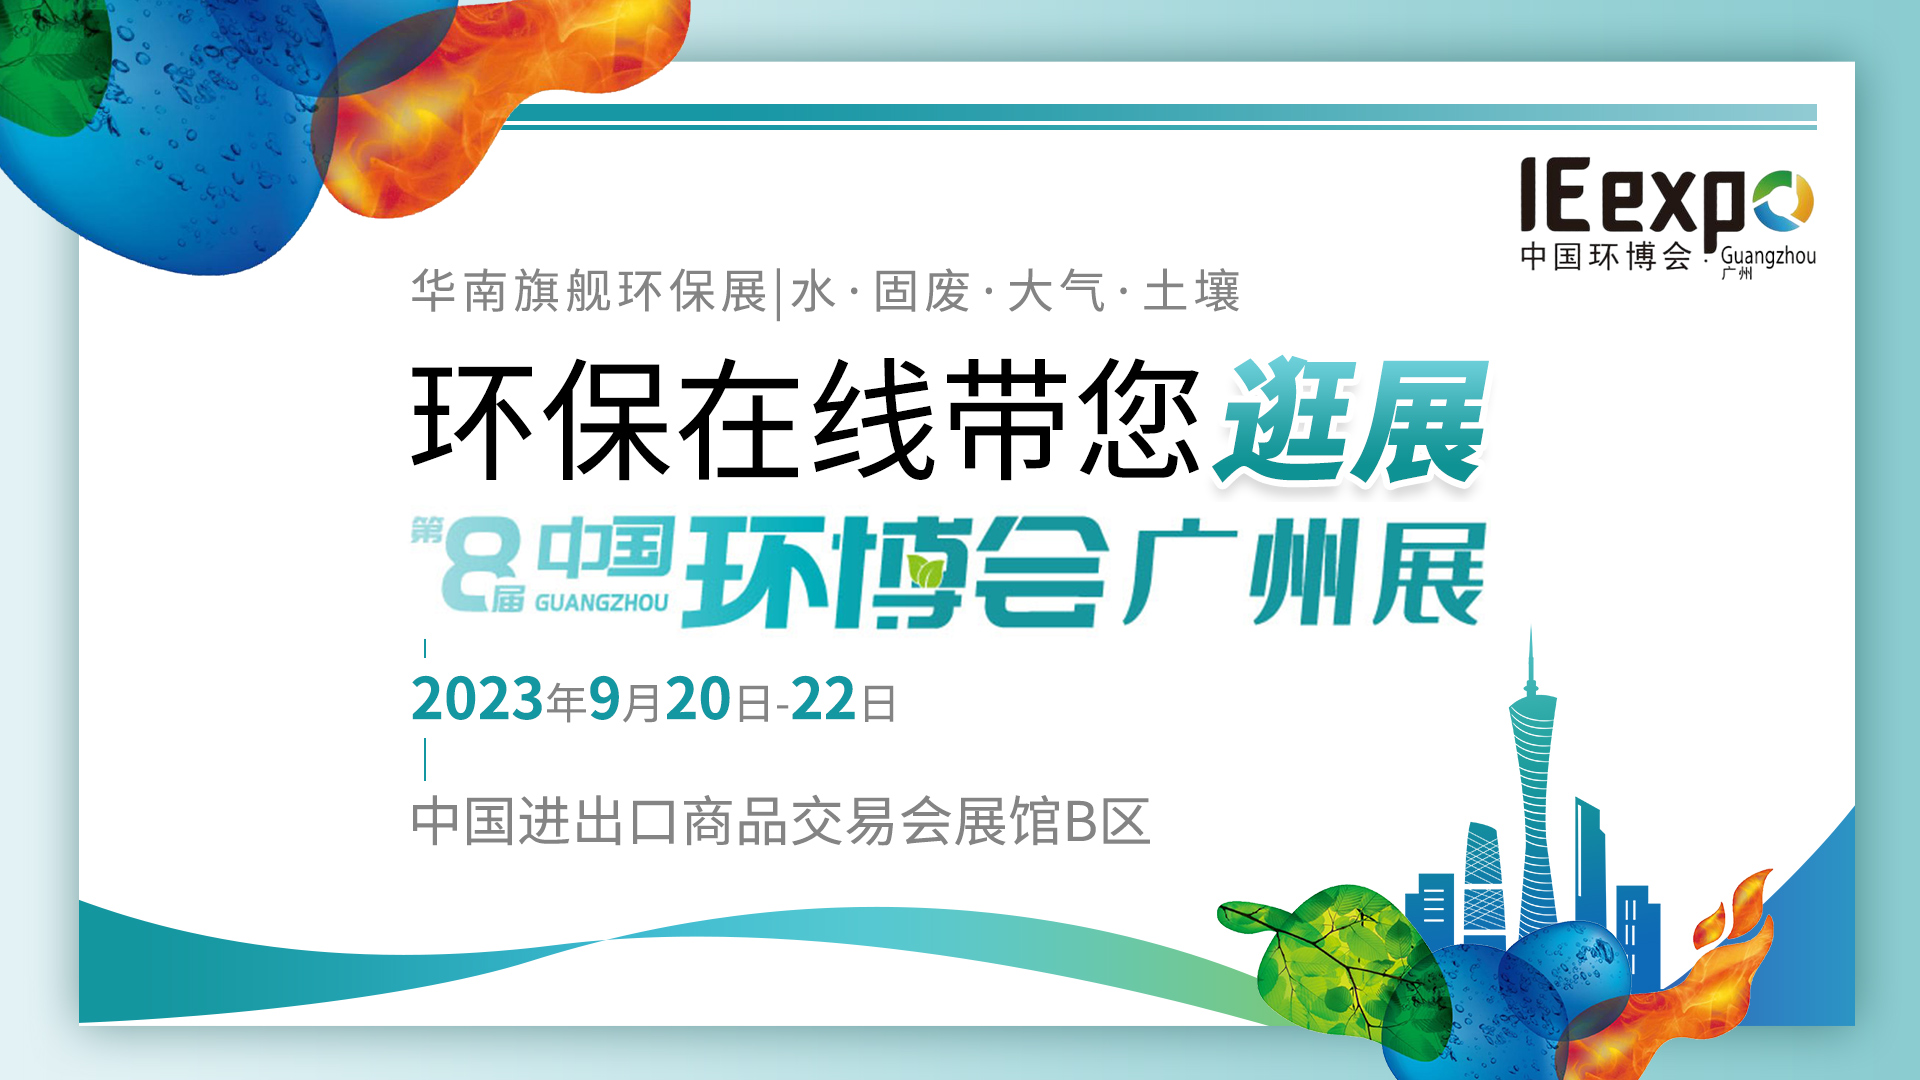 華南環保人的盛會來了！環保在線帶您逛展第8屆中國環博會廣州展